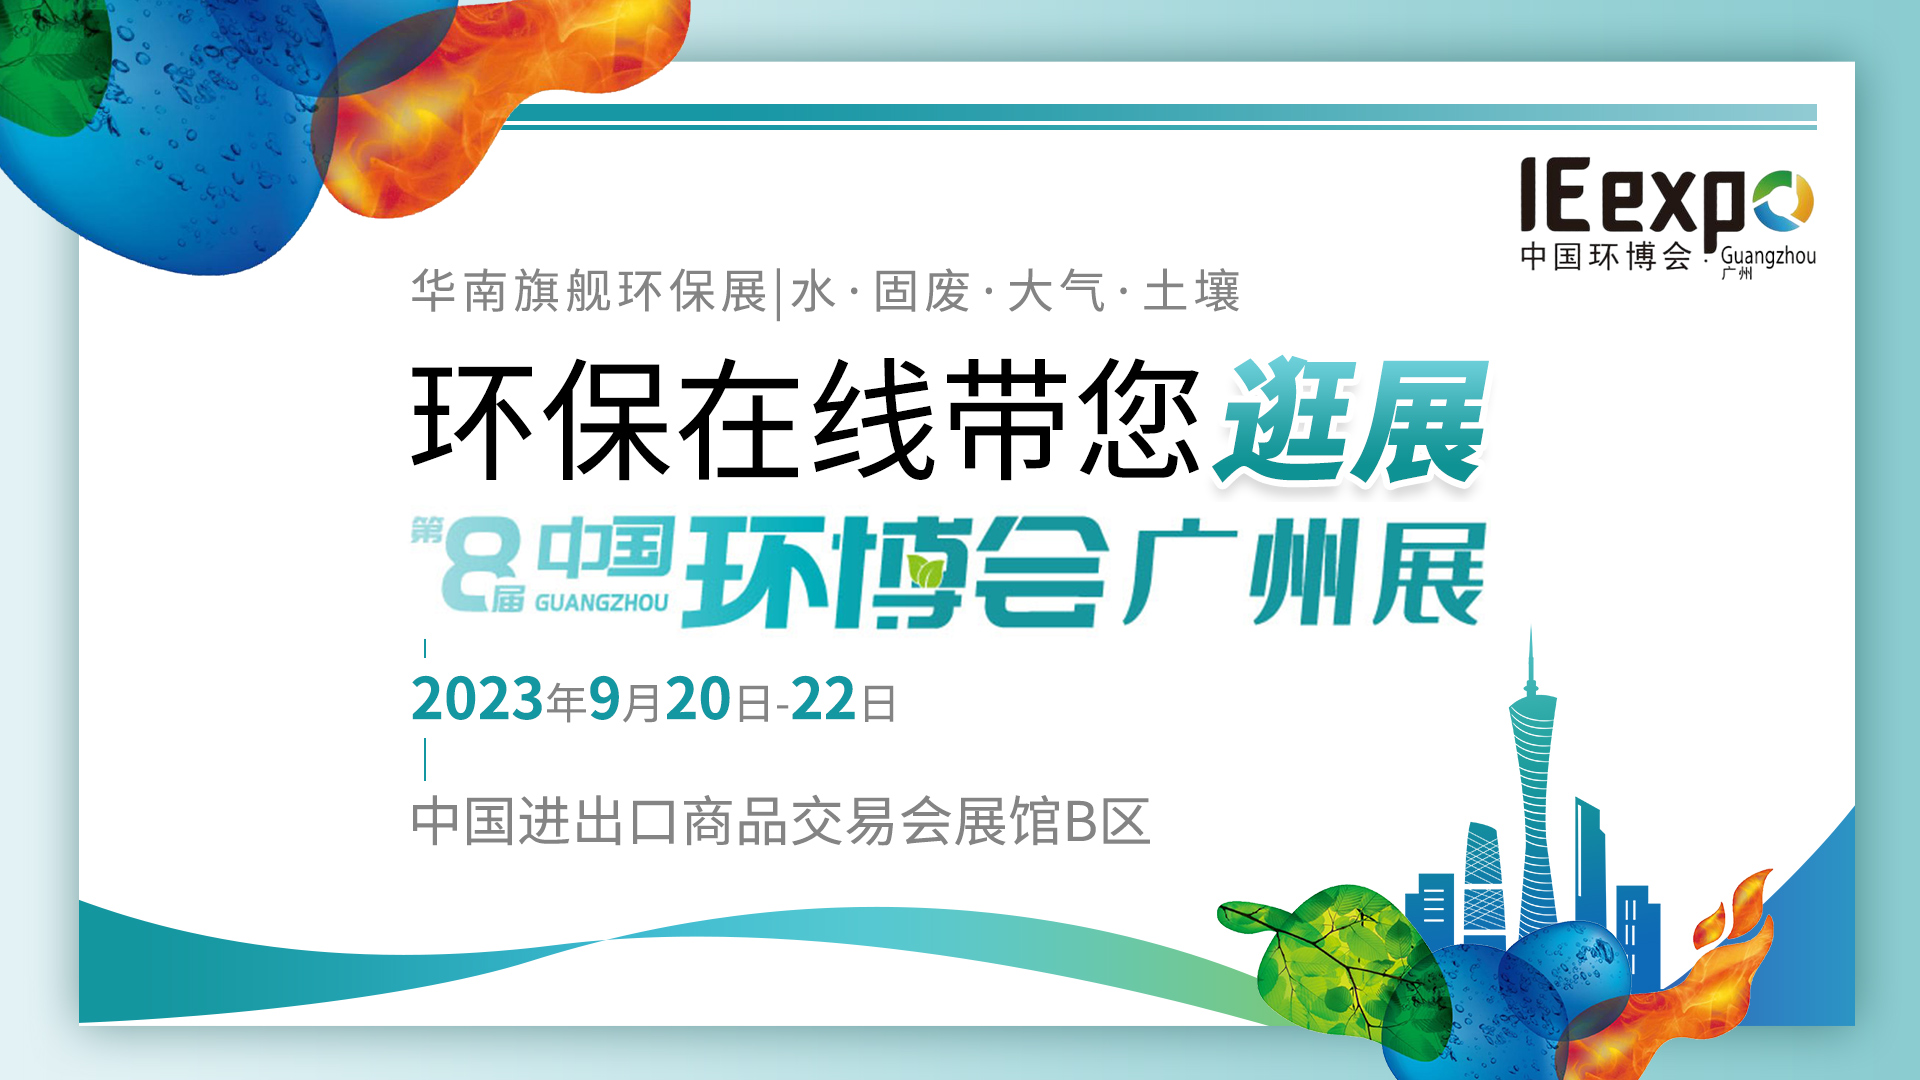 華南環保人的盛會來了！環保在線帶您逛展第8屆中國環博會廣州展